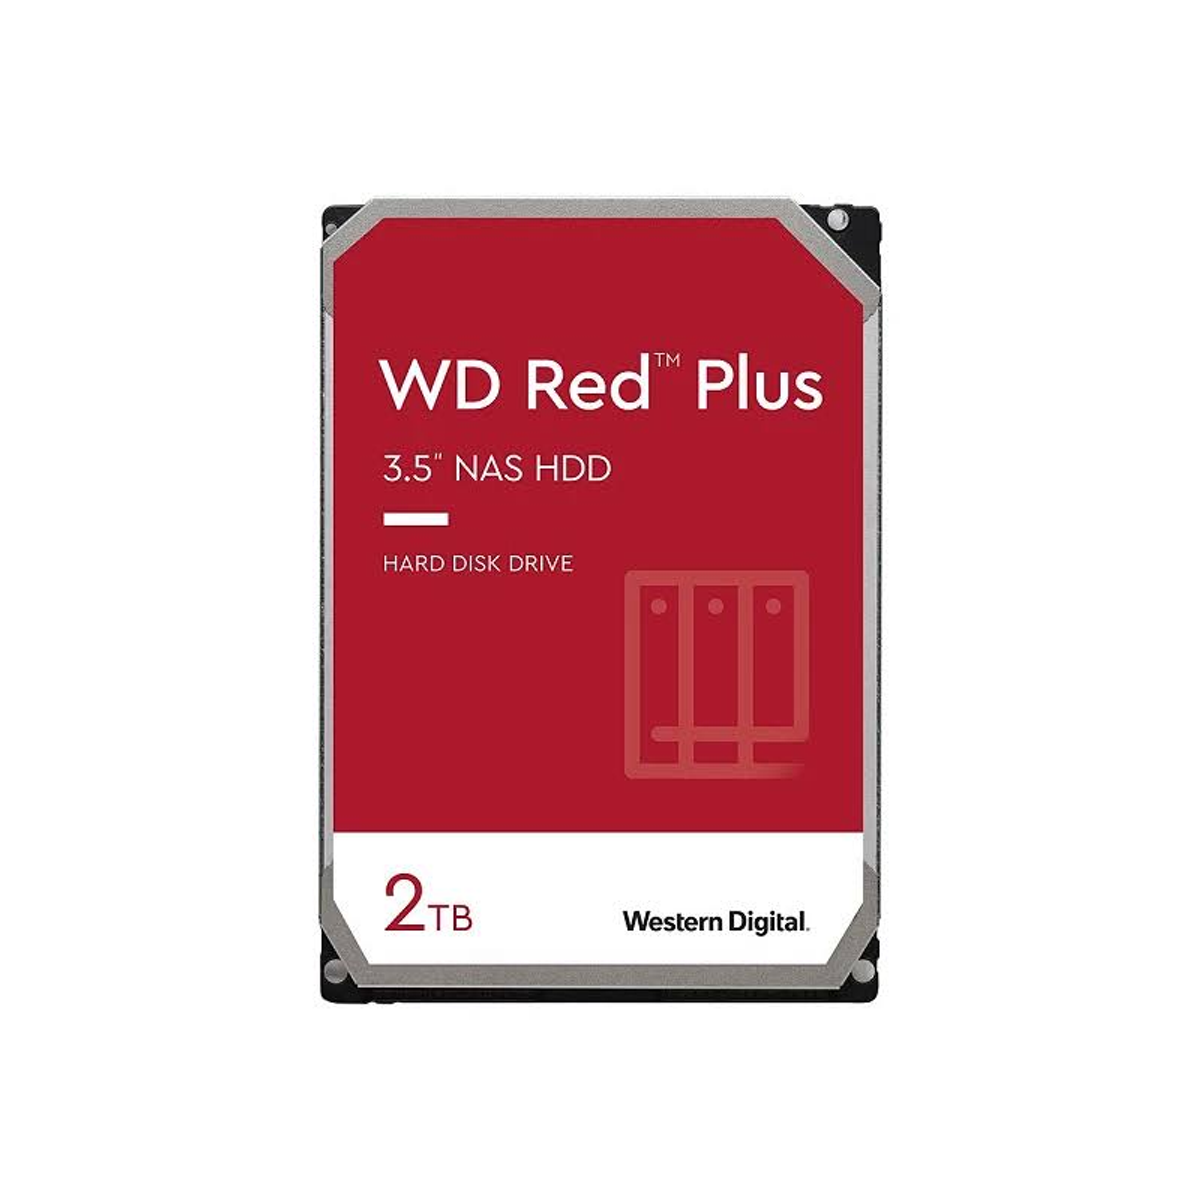 Red 2000 WD GB, 3,5 intern Zoll, Plus, HDD, WESTERN DIGITAL